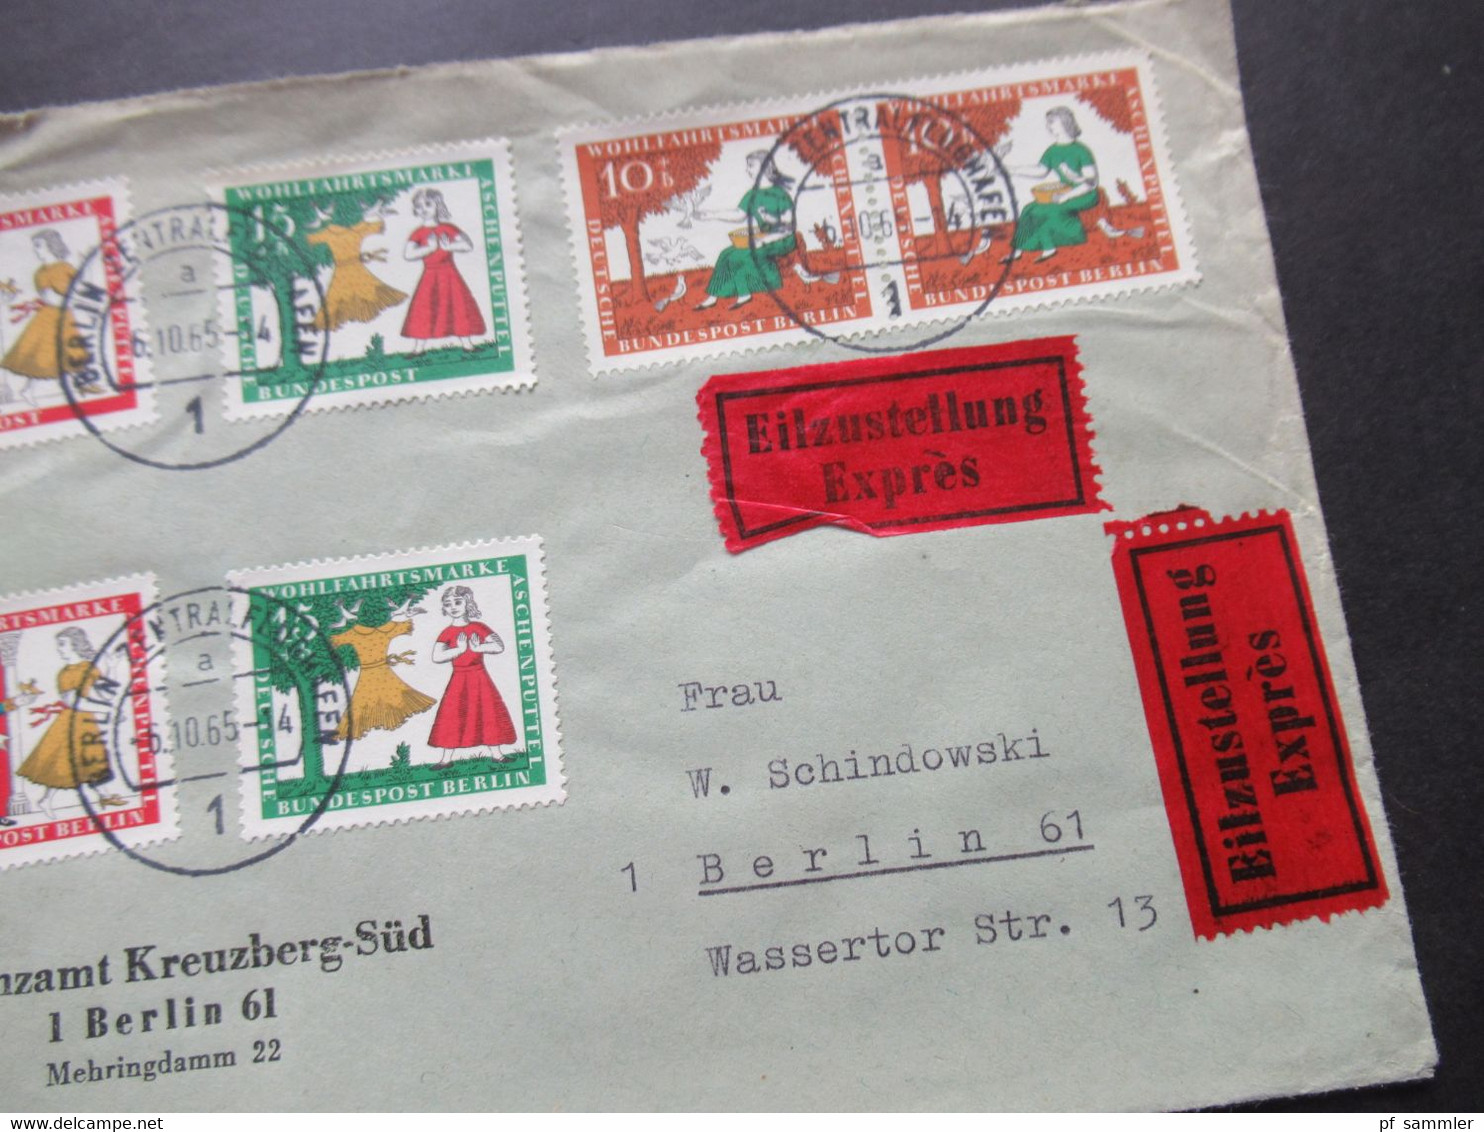 1965 Berlin (West) Wohlfahrt Märchen MiF Eilzustellung Expres Berlin Ortsbrief Stempel Berlin FA 1 / Finanzamt - Storia Postale